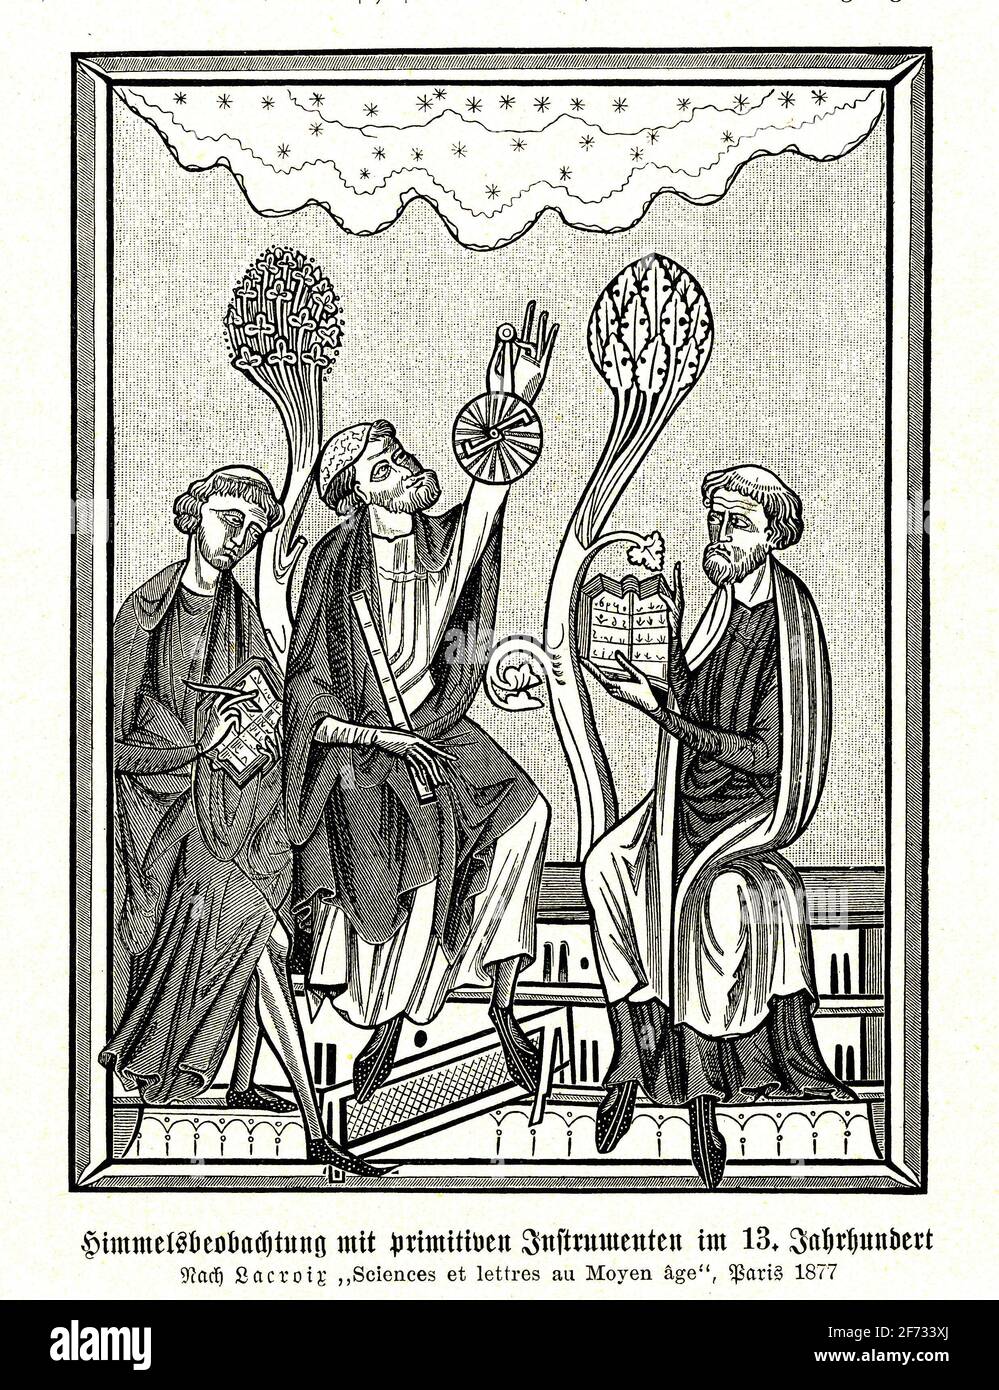 Observation céleste avec des instruments primitifs au XIIIe siècle, selon Lacroix Sciences et lettres du Moyen Age, Paris (1877) Banque D'Images